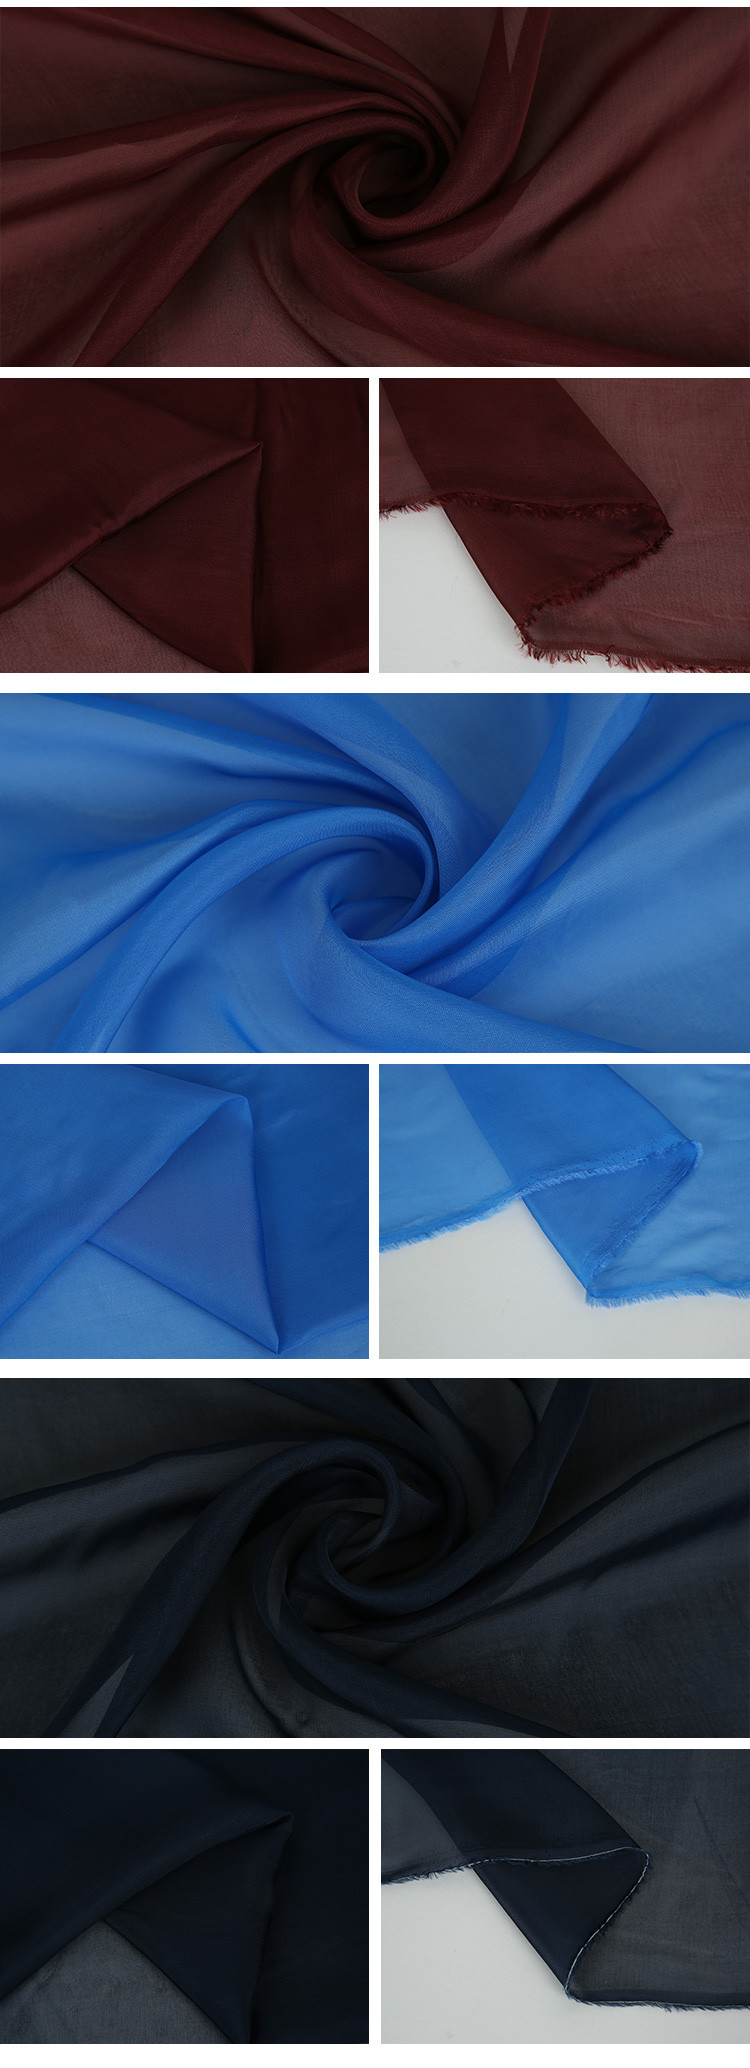 N29 Silk Chiffon Rayon Knit Fabric Uses Of Evening Dress